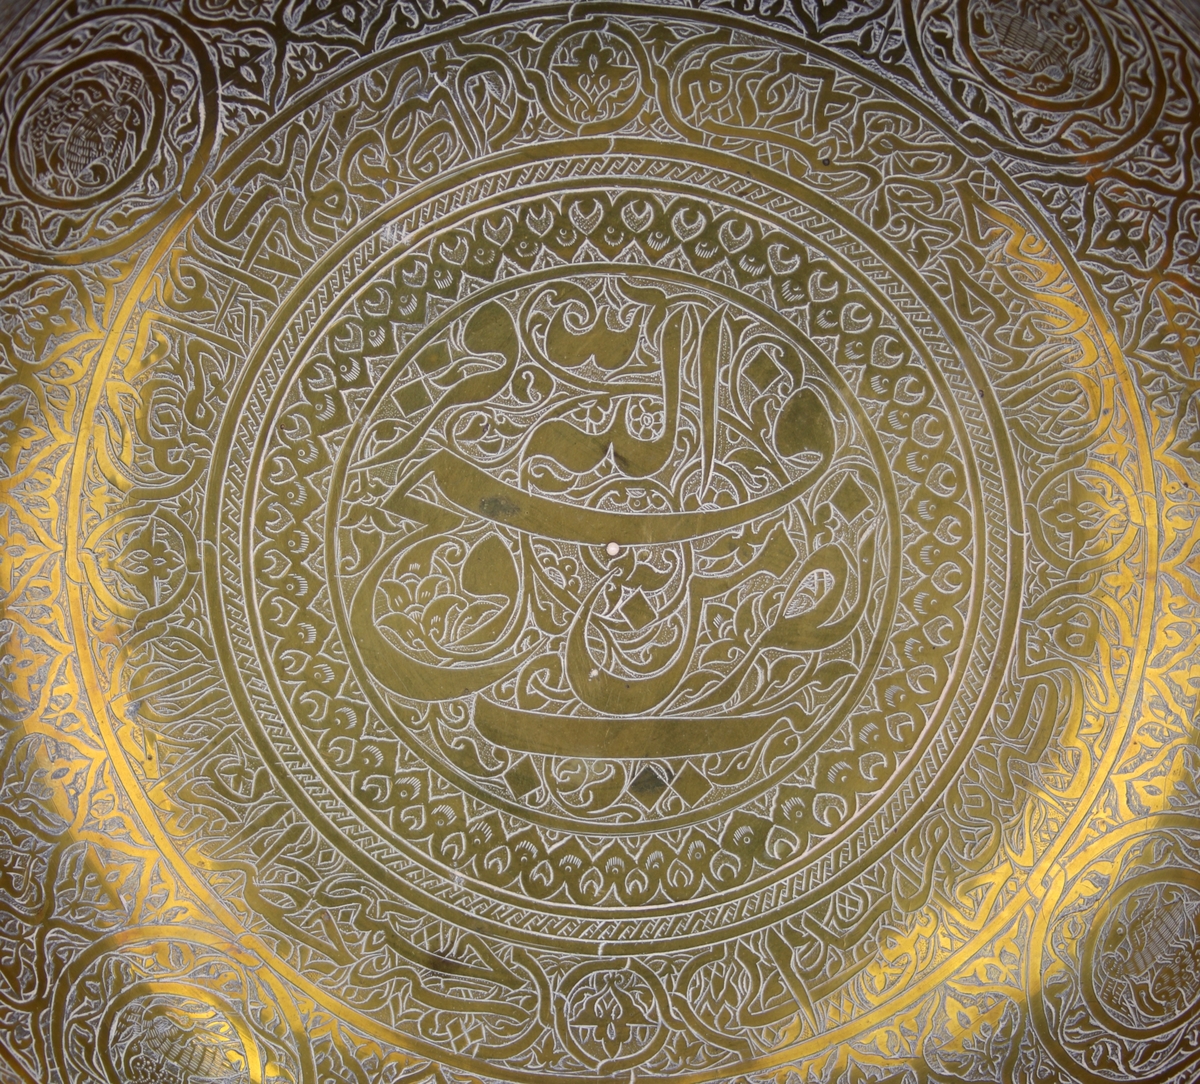 Skål av mässing med graverad dekor.Enligt notering från Persien. På skålen finns både arabisk och persisk skrift. Det är citat ur koranen (Med hjälp av gud är segern nära) och en persisk dikt.